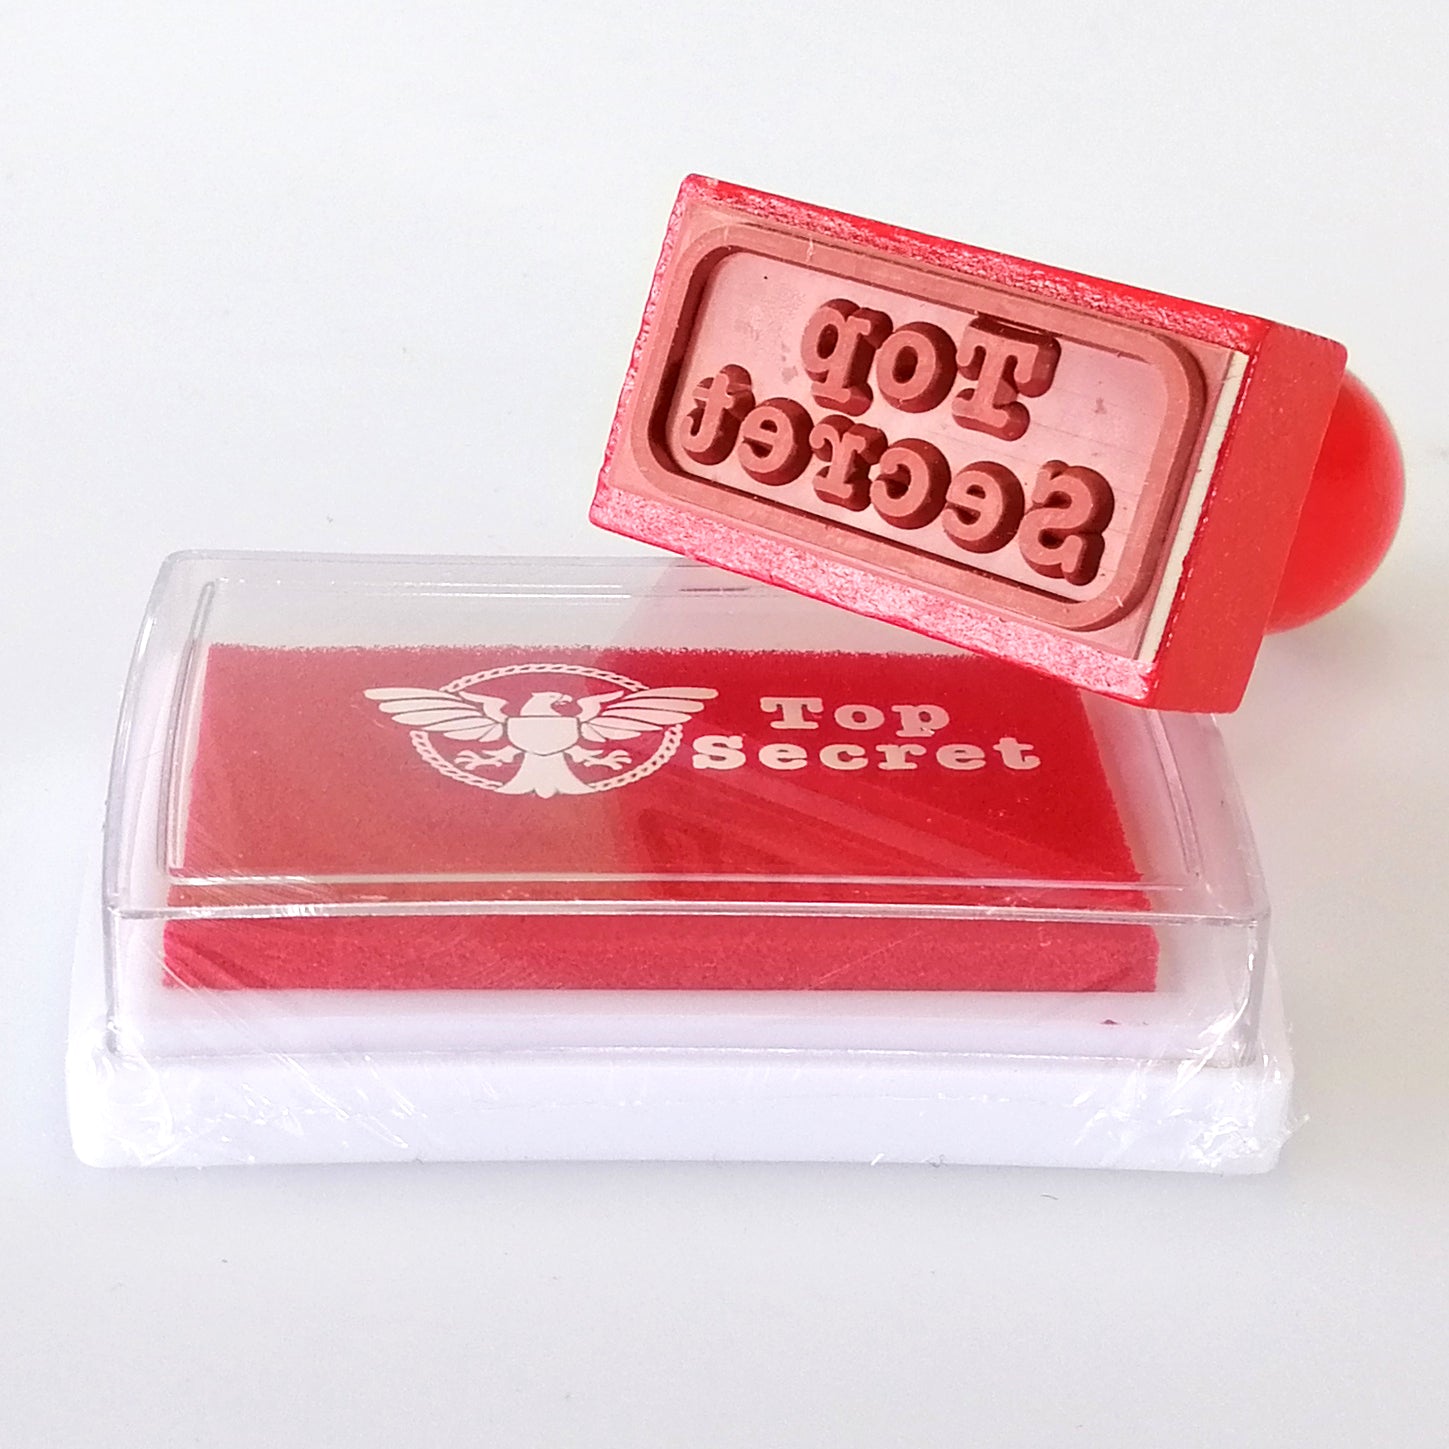 Top Secret' Stamp & Ink Pad Set